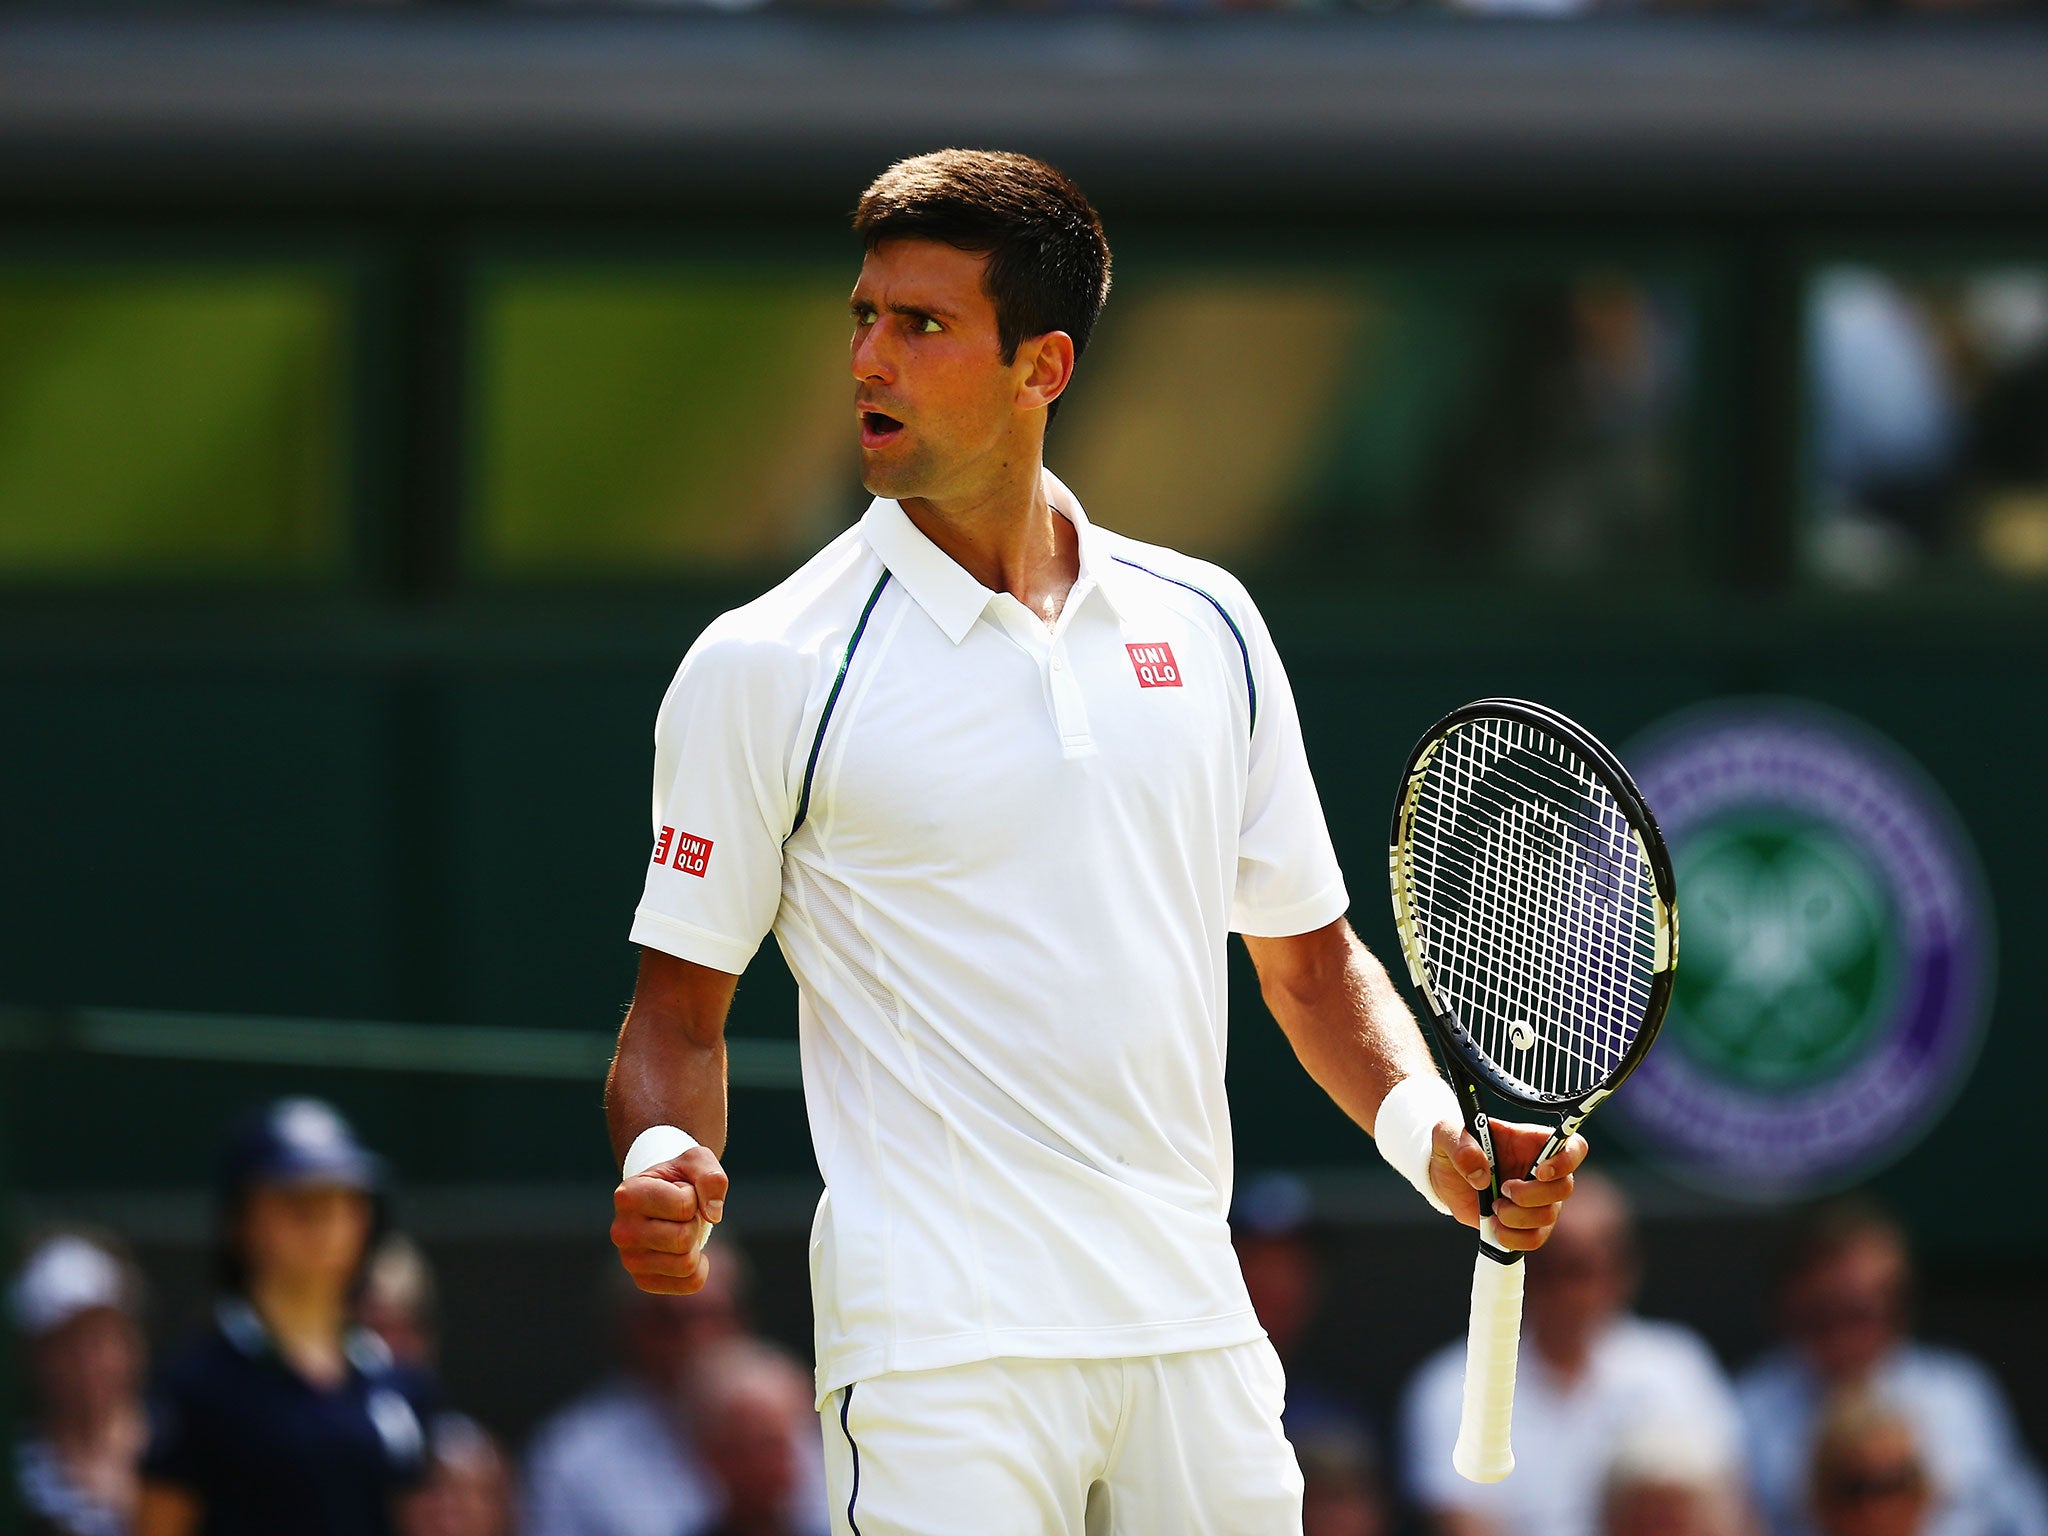 Wimbledon 2015 Novak Djokovic ends Wimbledon career of Jarkko Nieminen